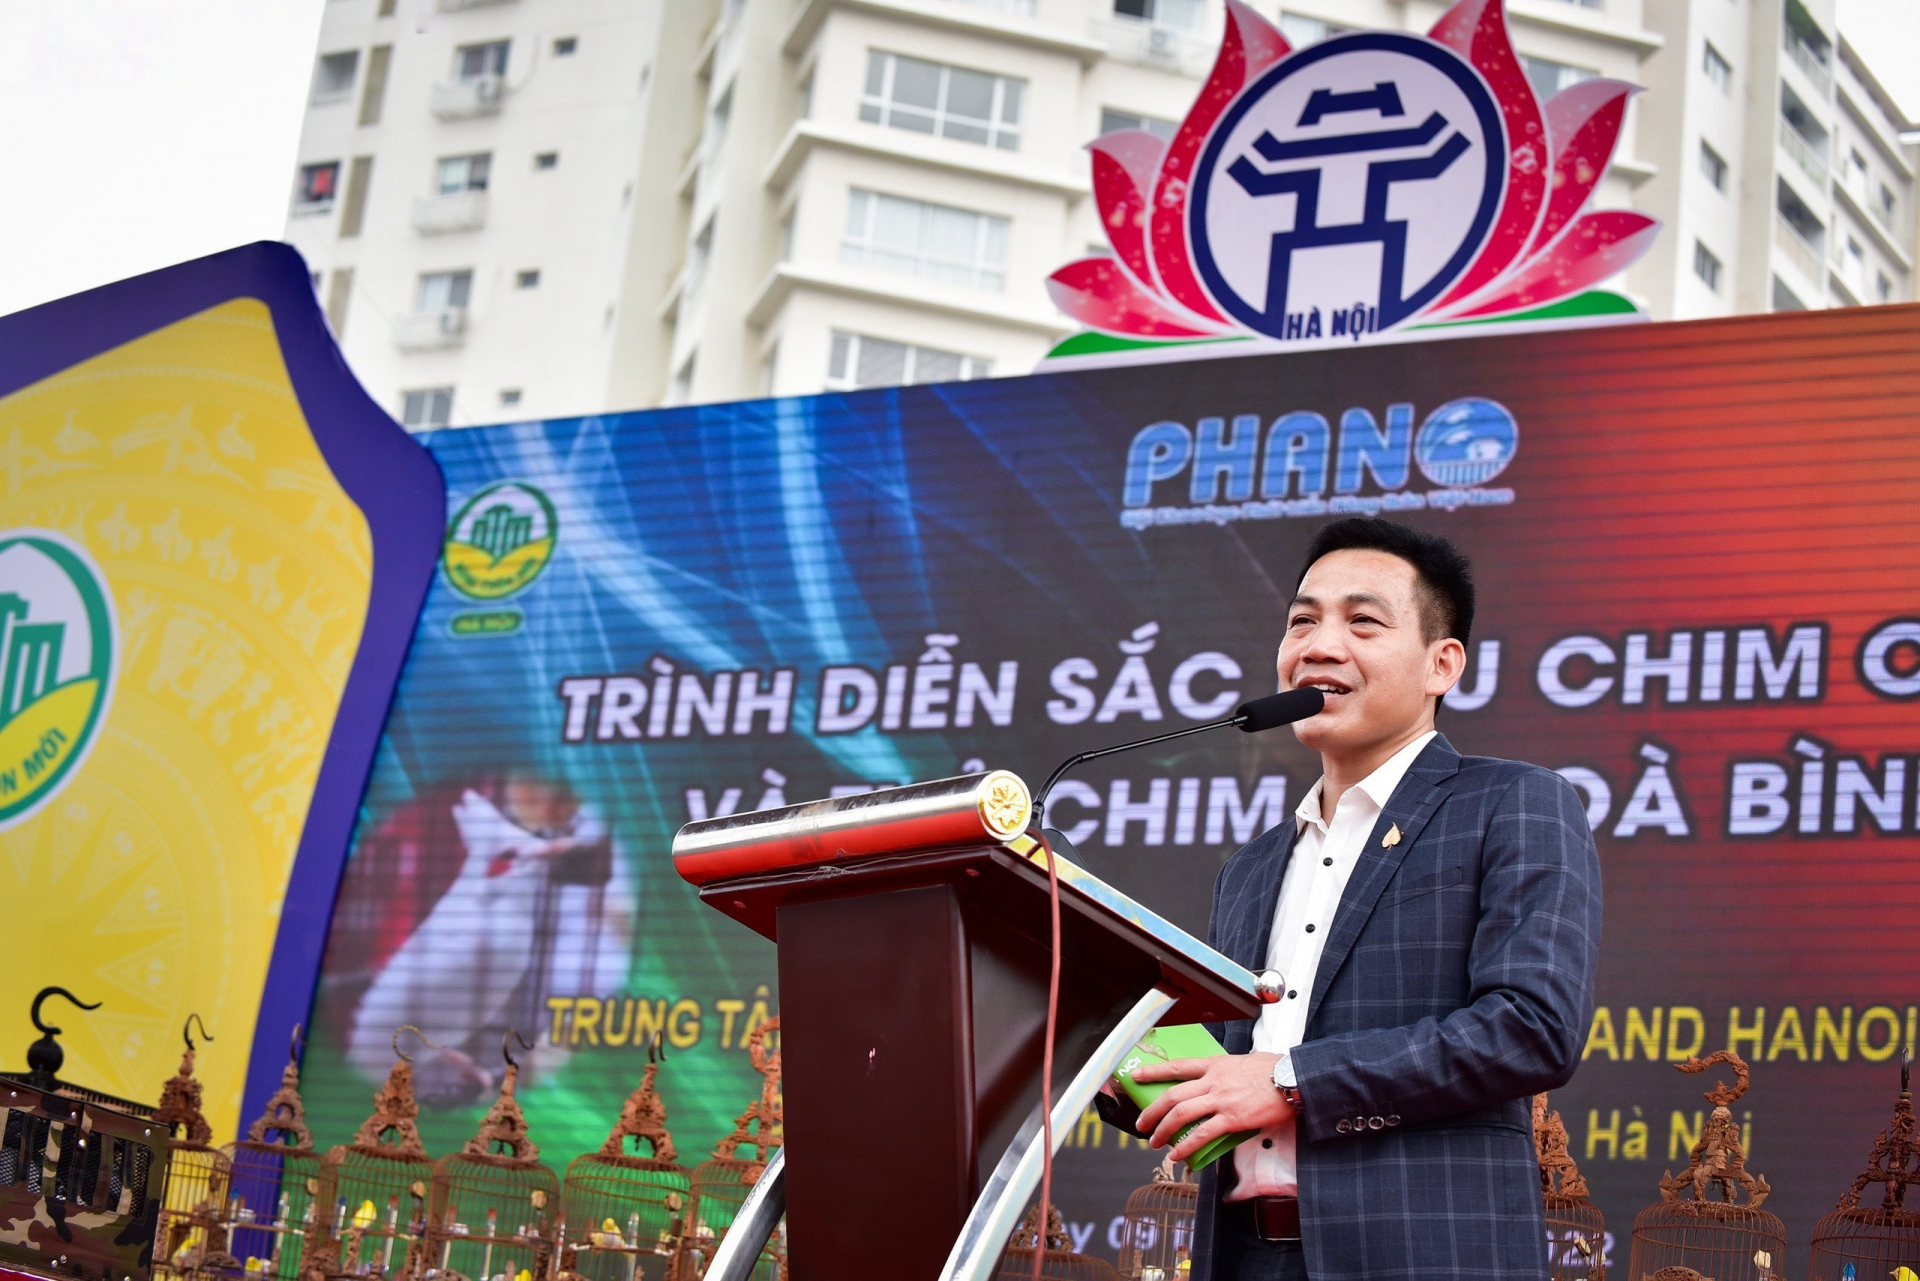 Nhà báo Vương Xuân Nguyên phát biểu trong một sự kiện Sinh Vật Cảnh